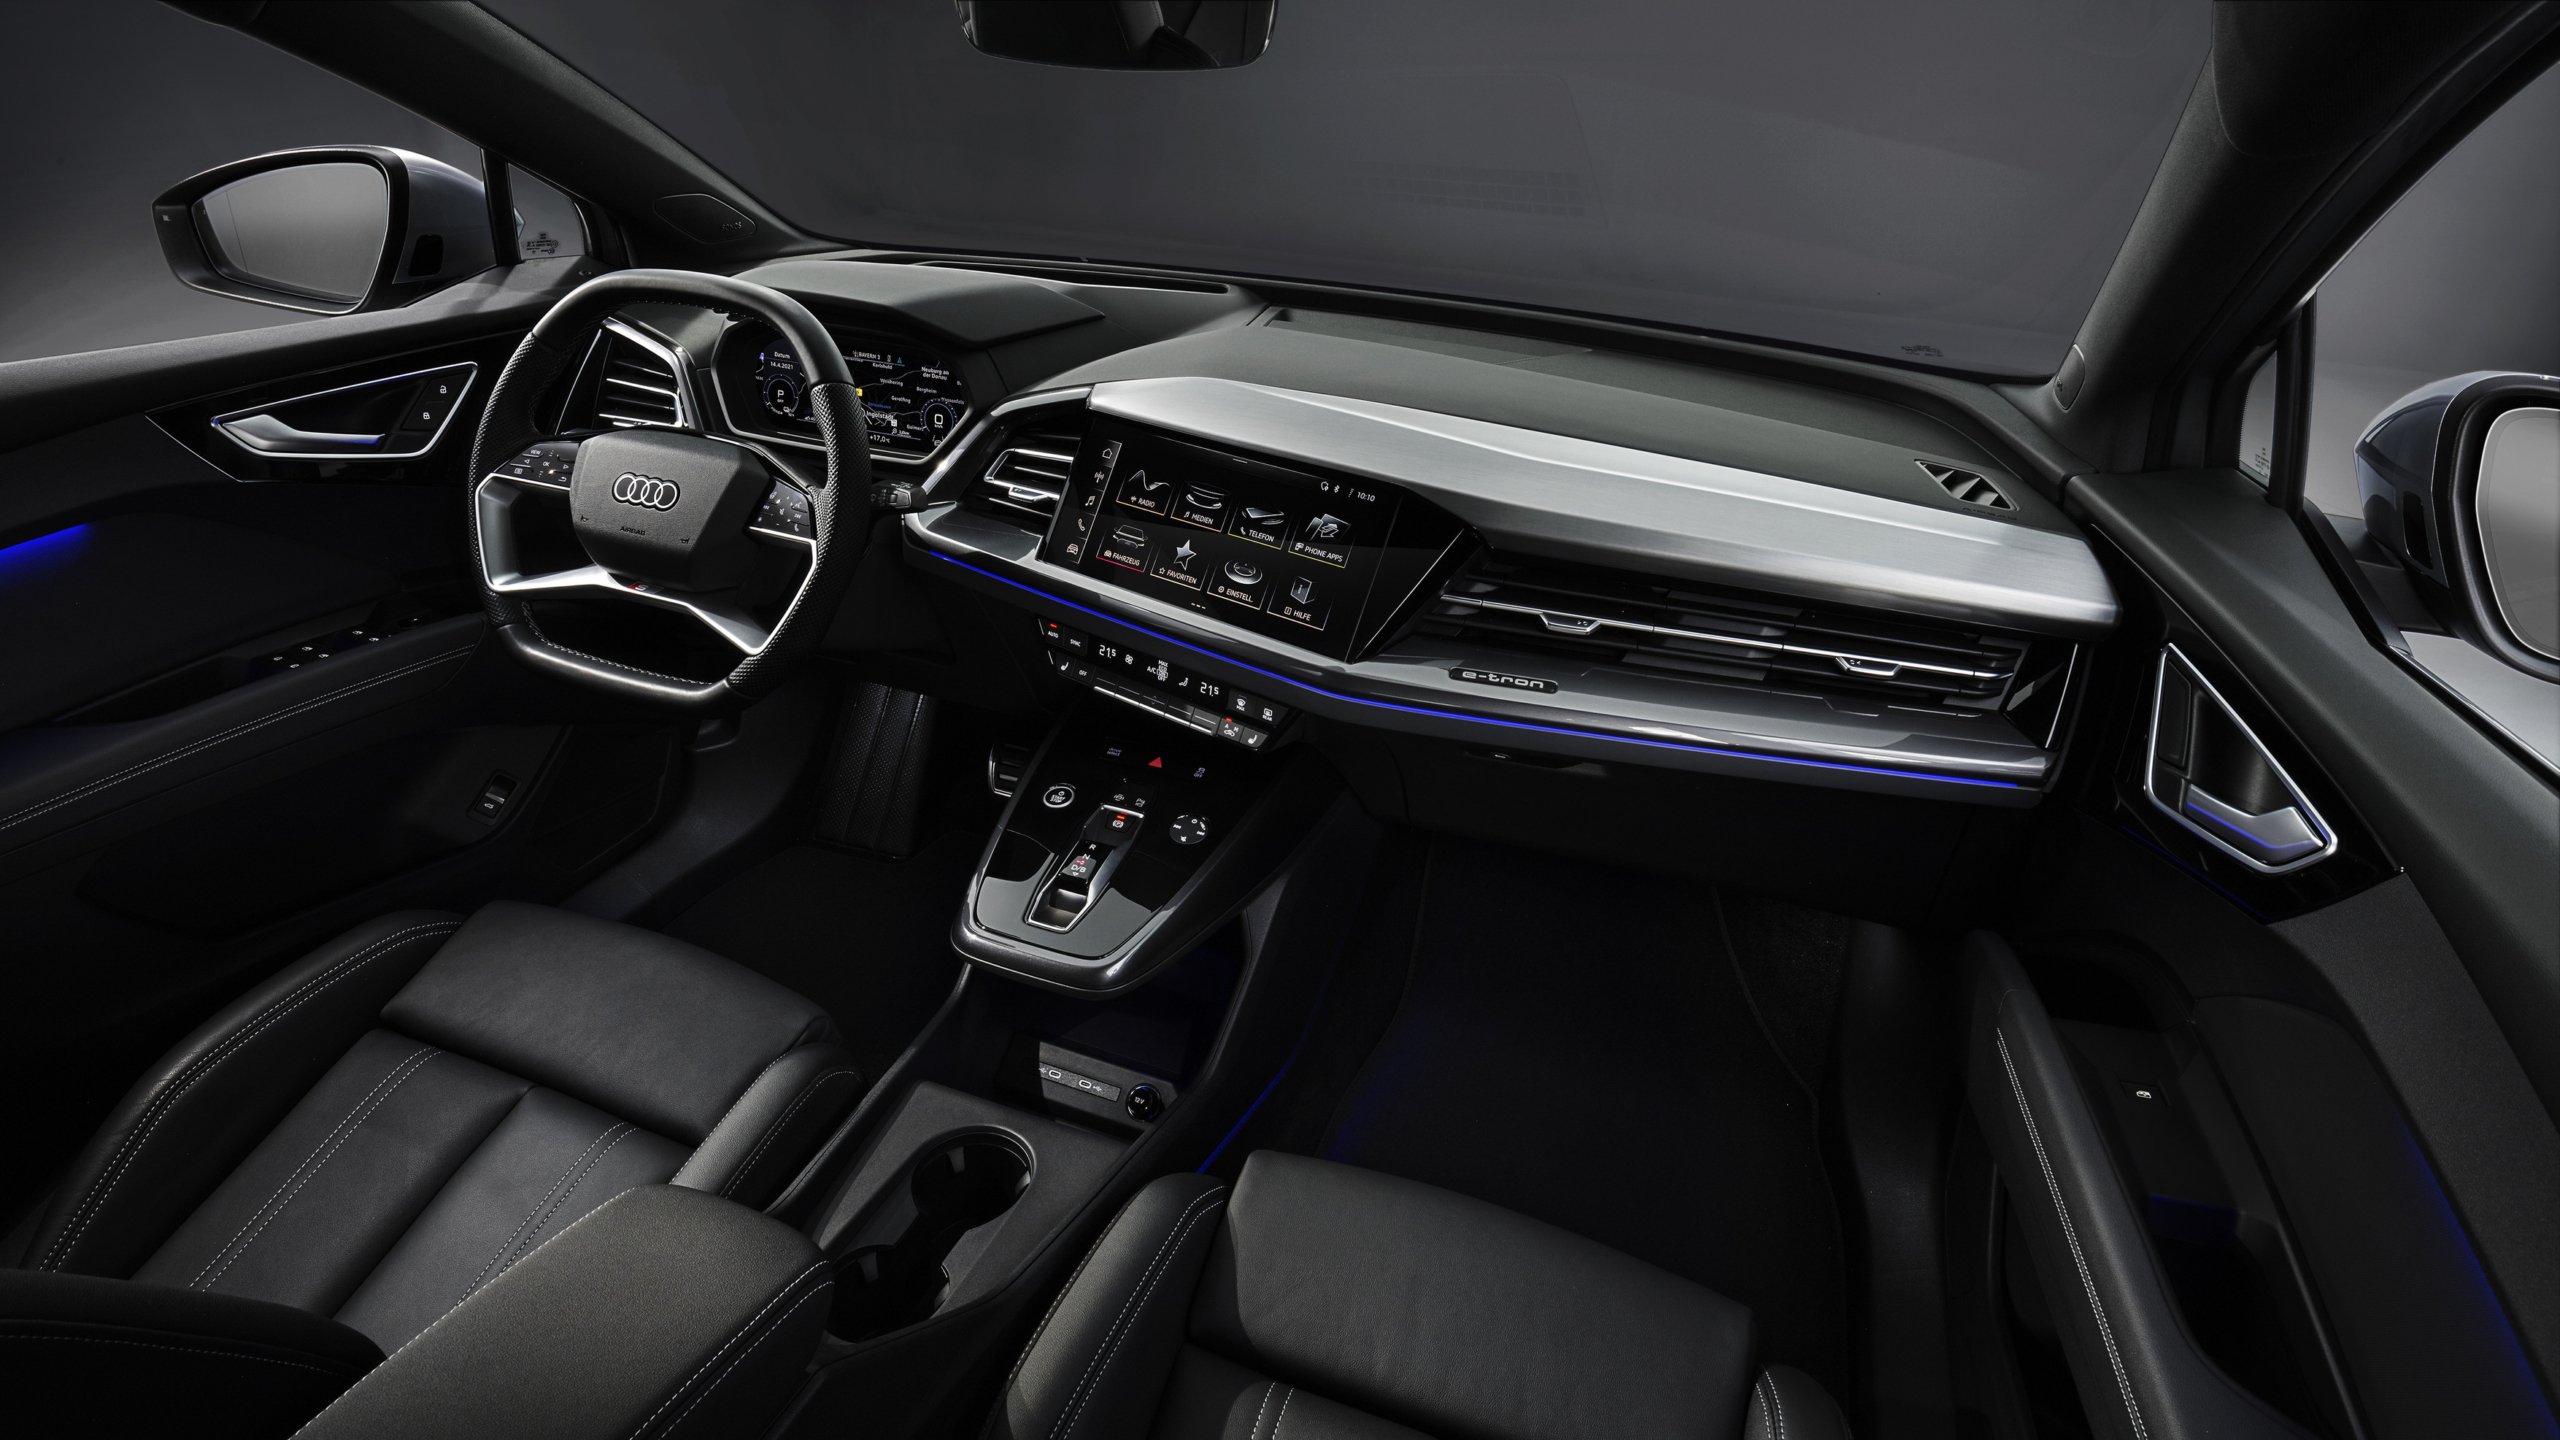 Audi Q4 e-tron interior